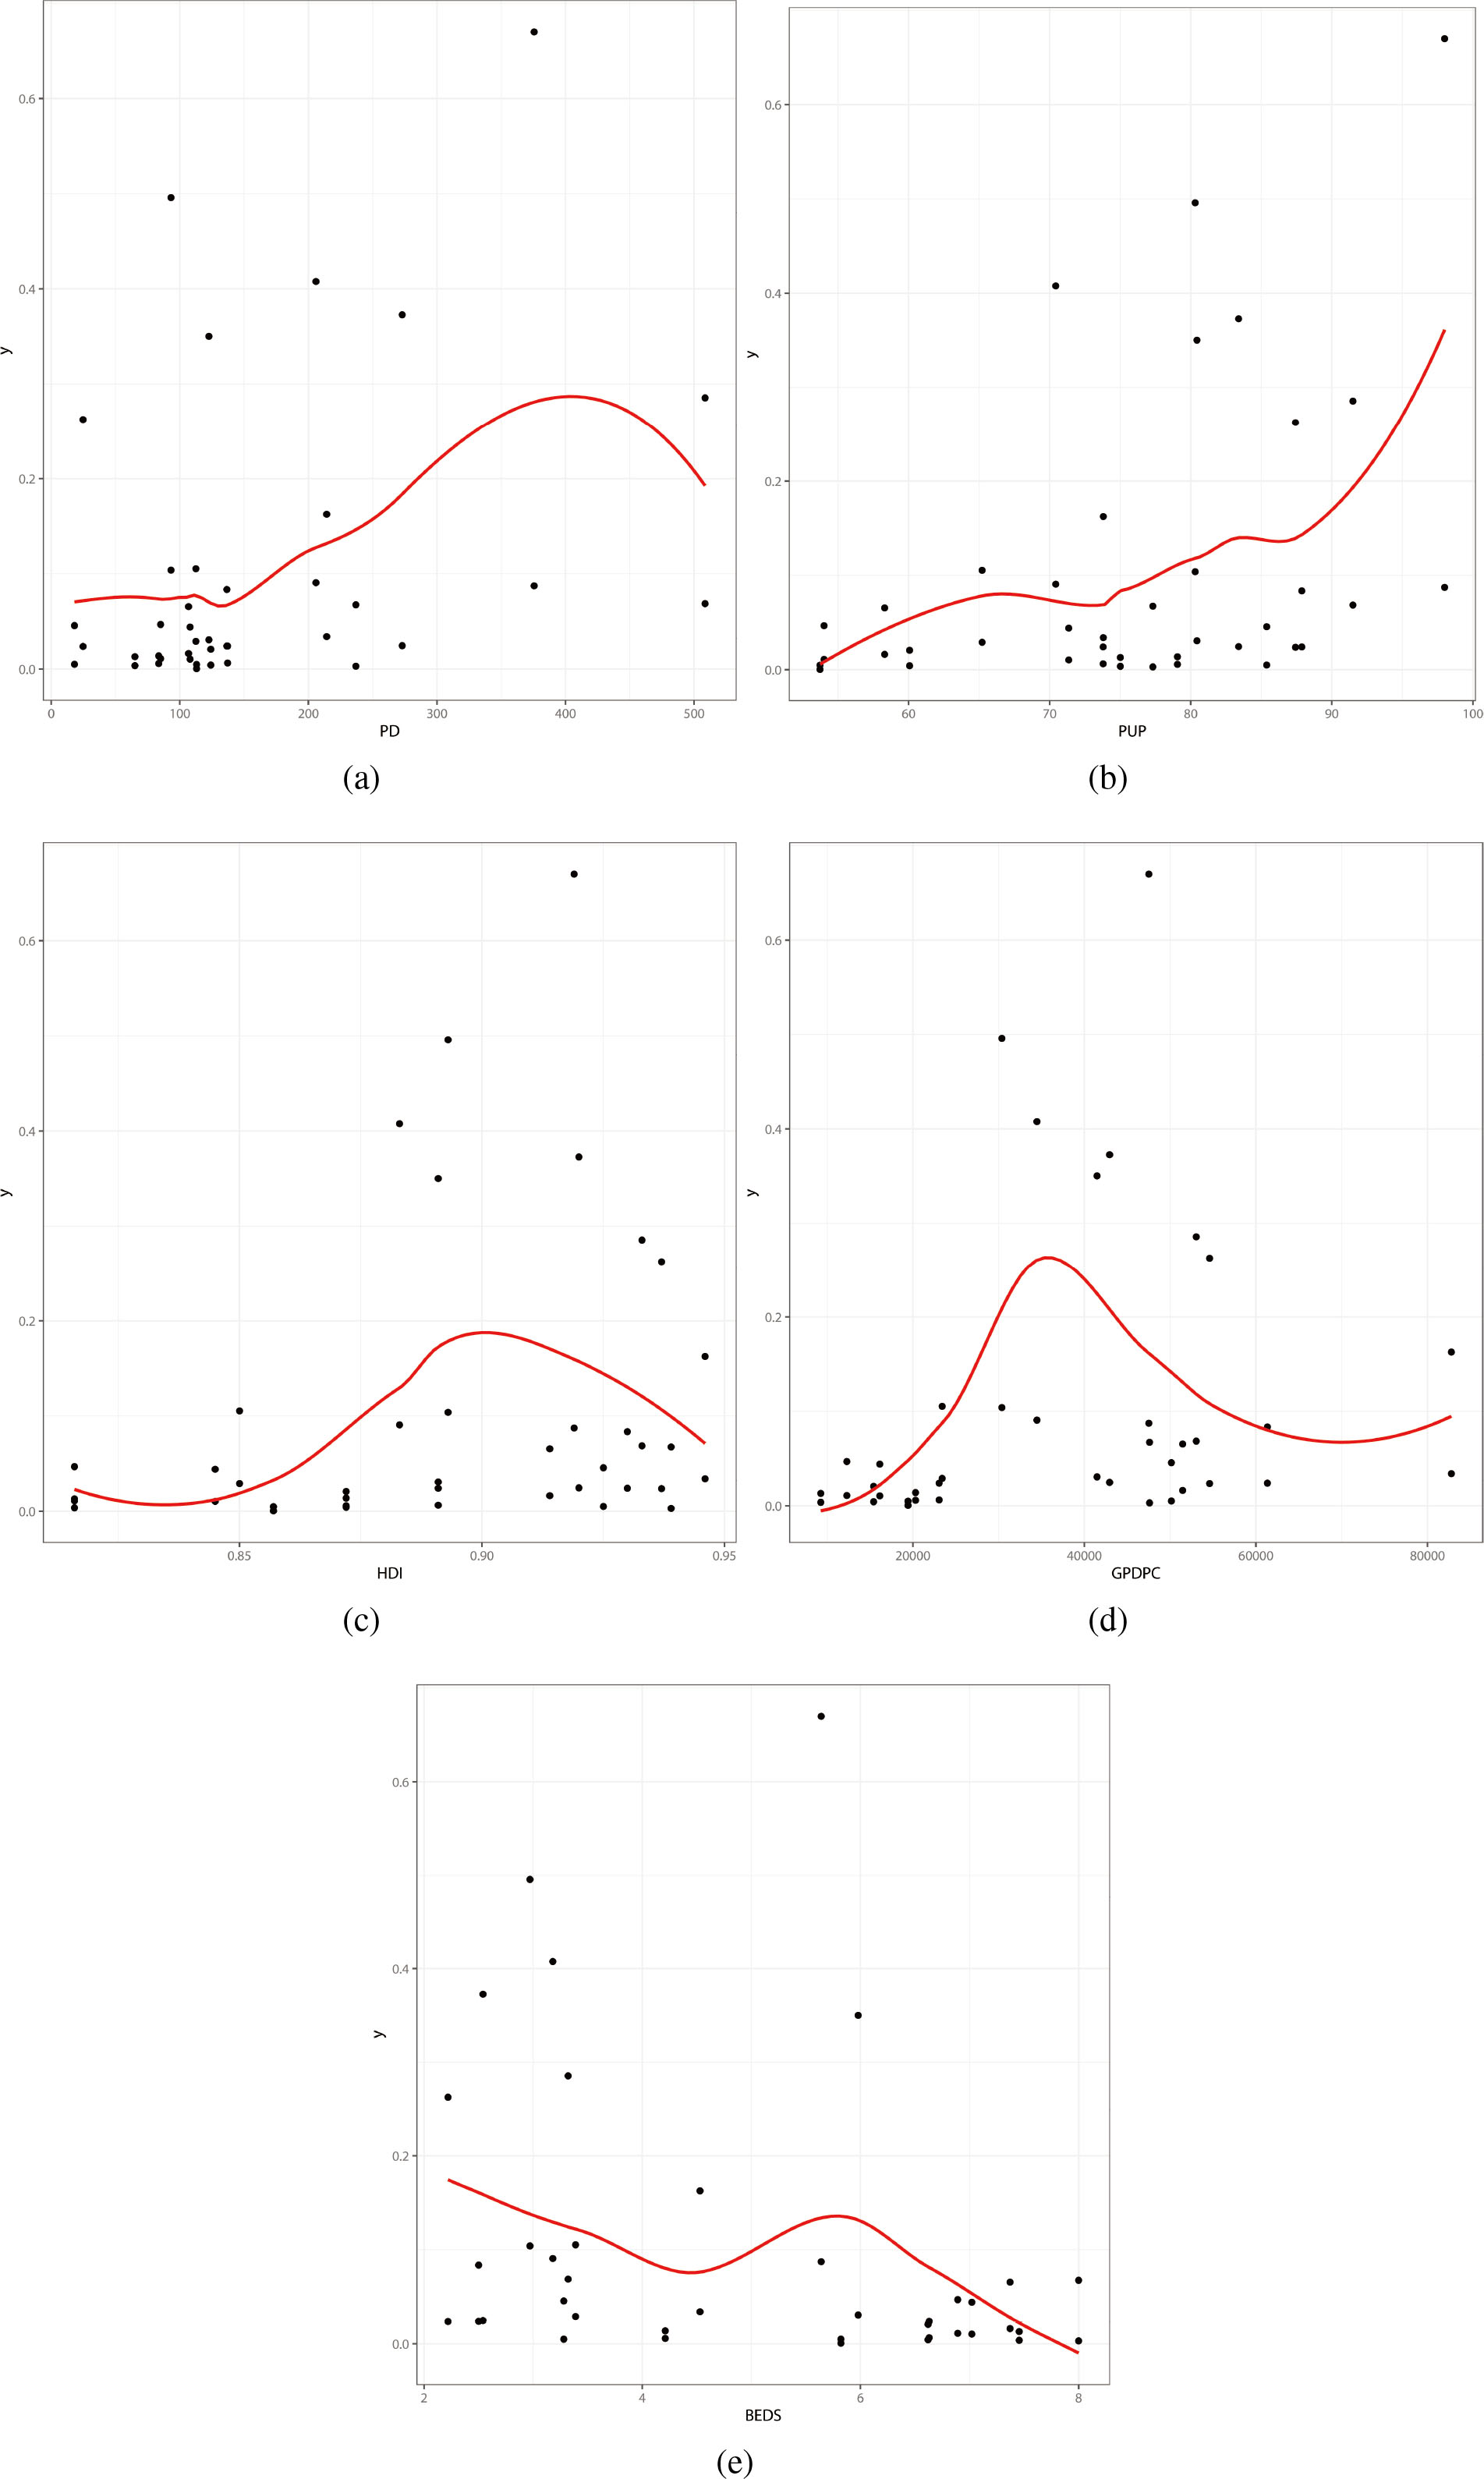 Dispersion Graphs. (a) y vs PD. (b) y vs PUP. (c) y vs HDI. (d) y vs GDPPC. (e) y vs BEDS.